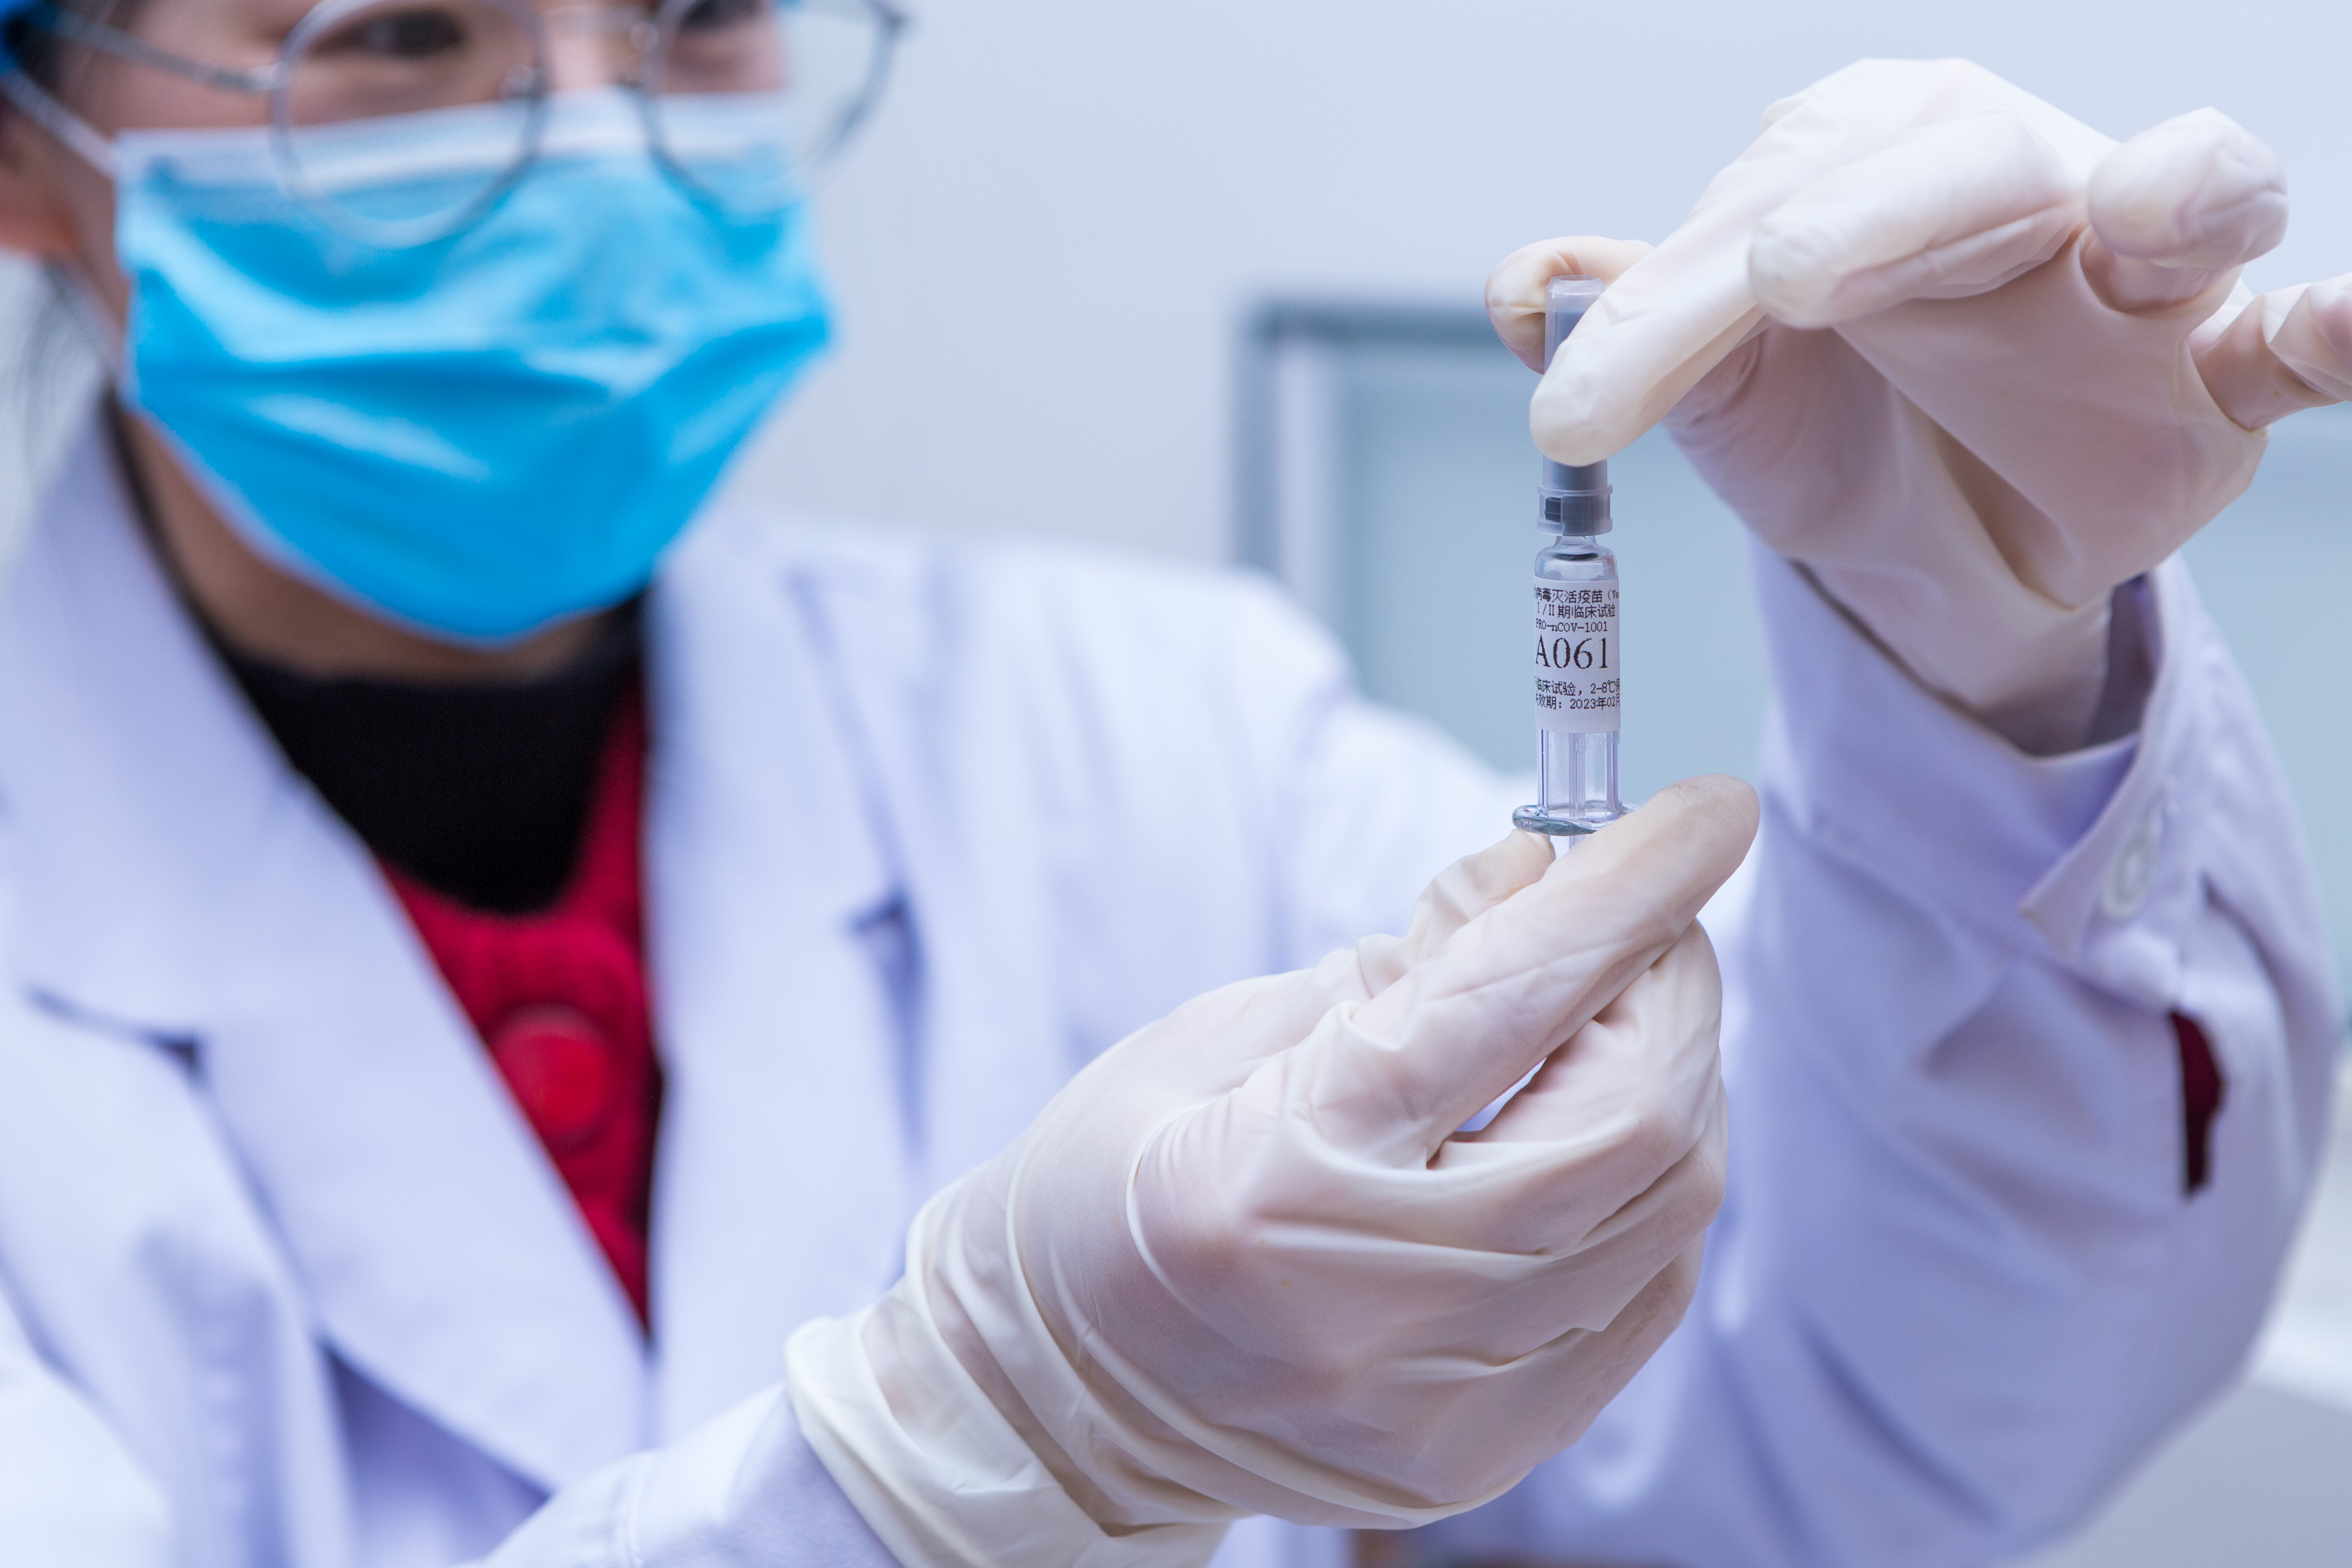 中国科兴疫苗 你可能想知道的几个问题 - BBC News 中文